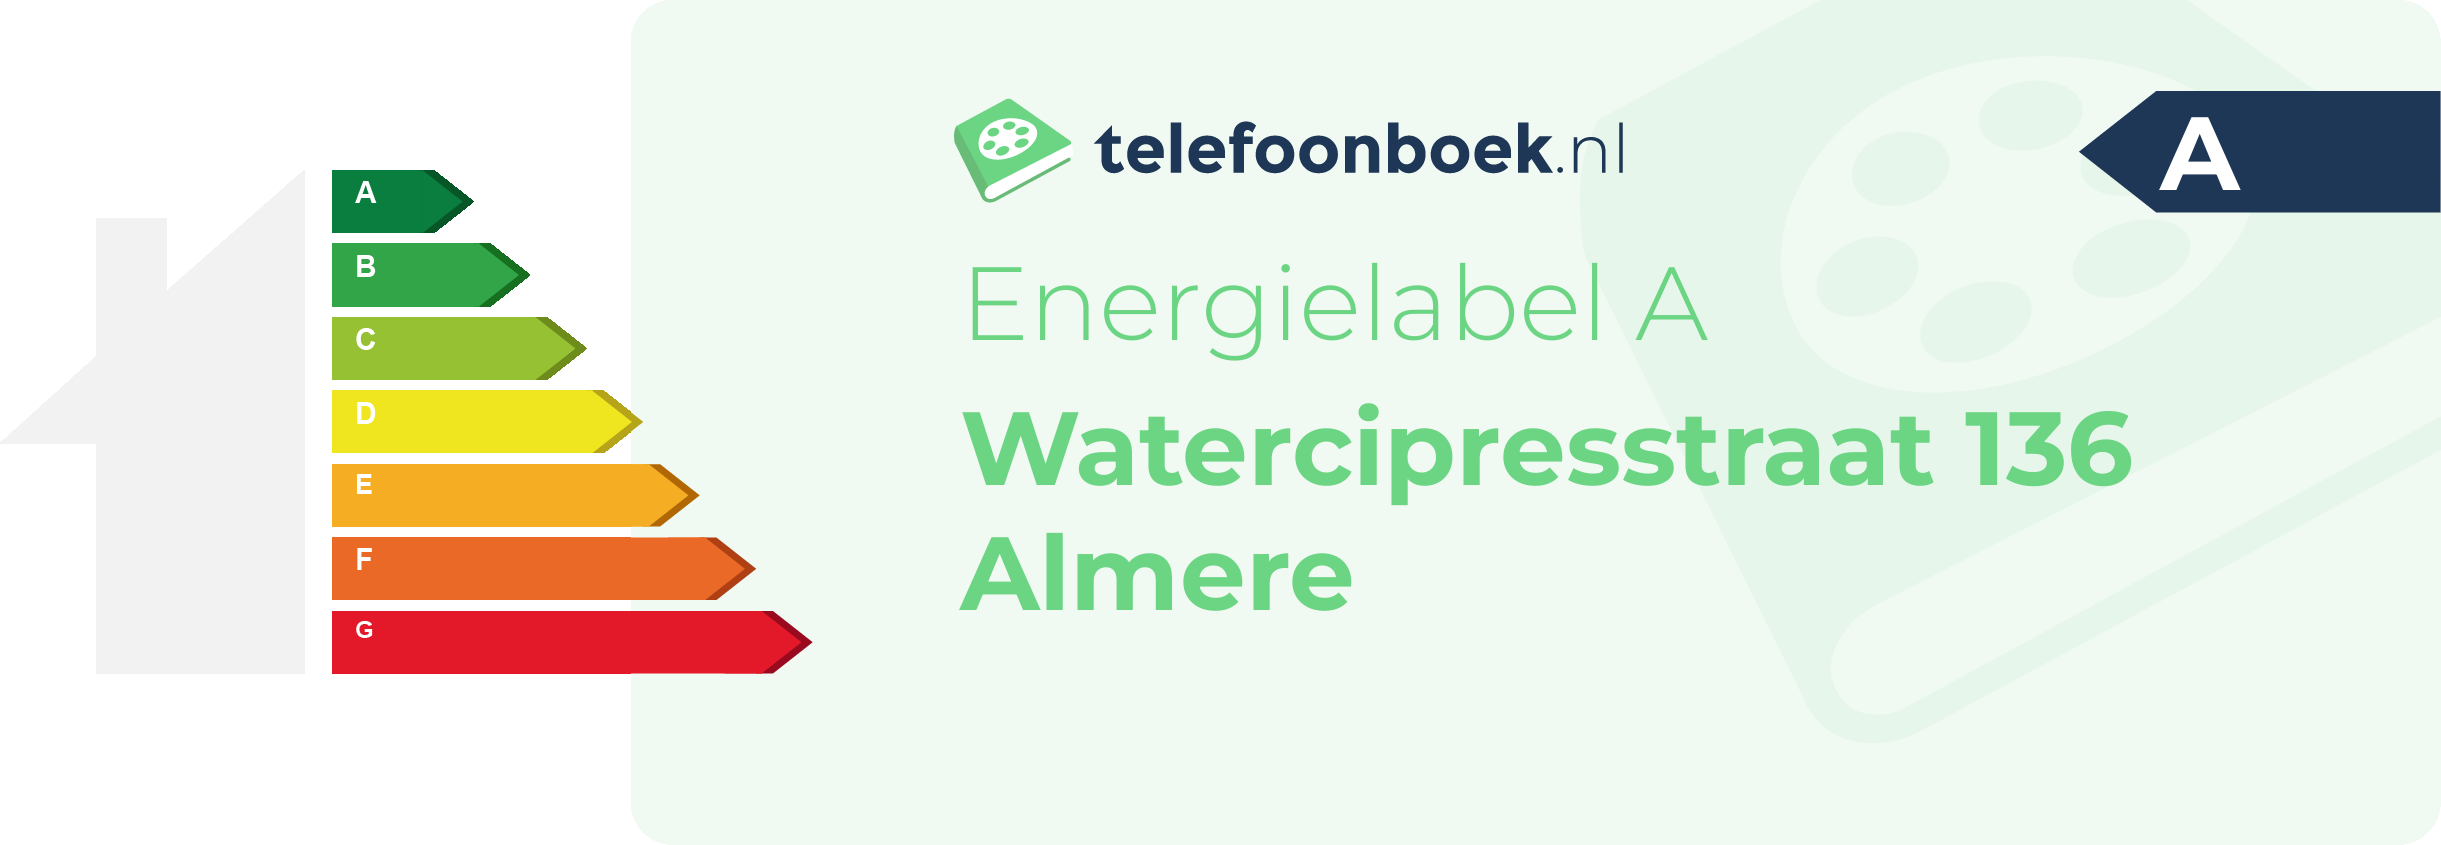 Energielabel Watercipresstraat 136 Almere